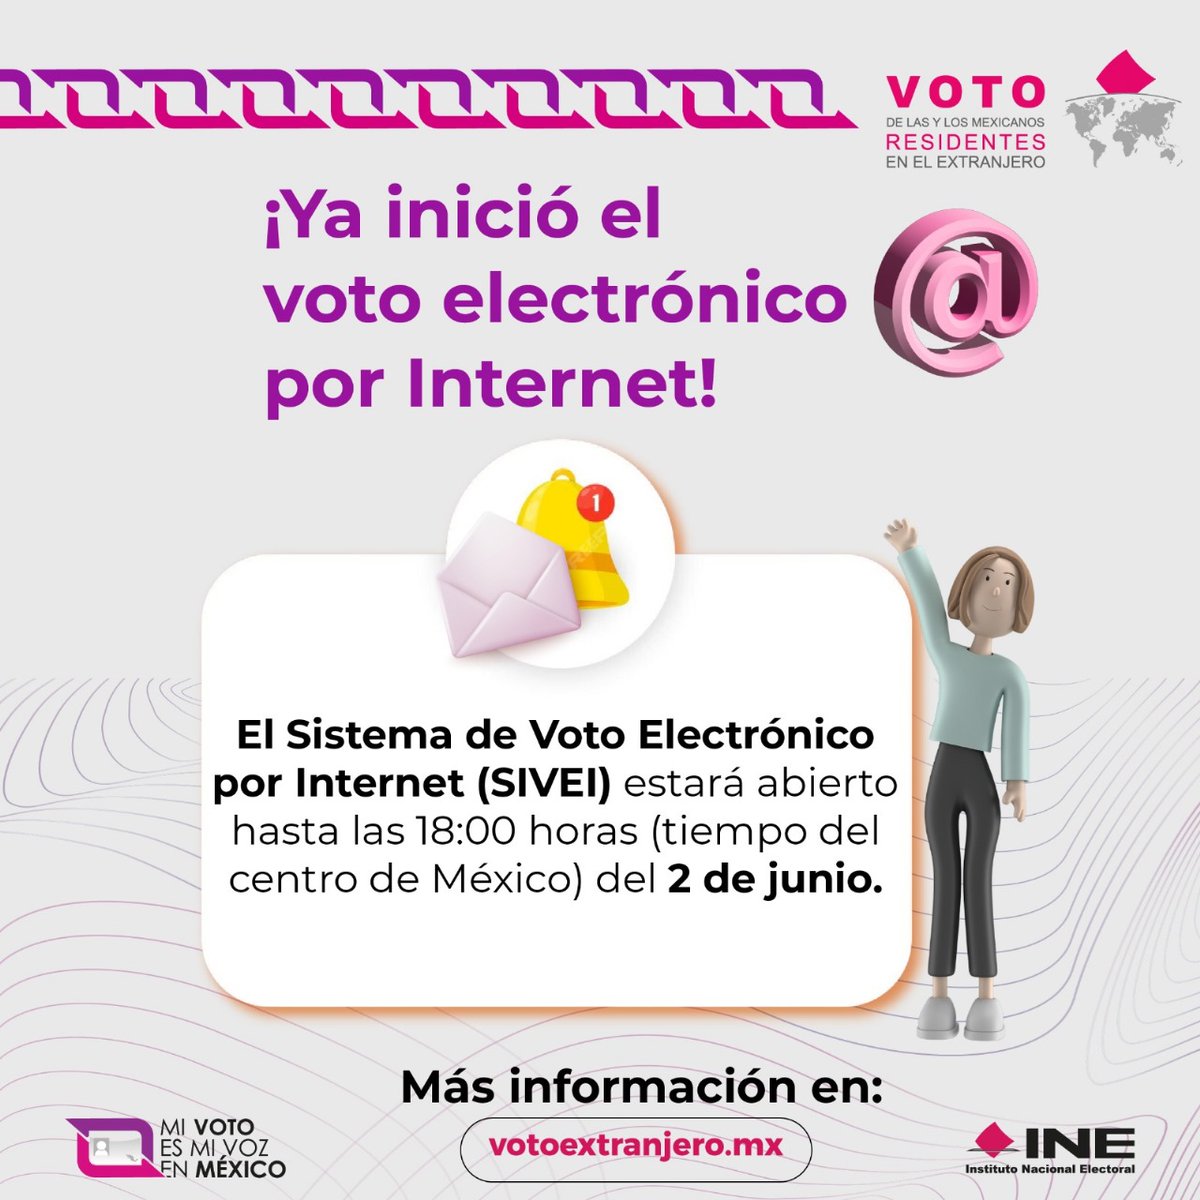 Elegiste la modalidad electrónica para votar desde el extranjero, ¡El periodo ya comenzó! 🗳 #VotoExtranjero #INEMéxico